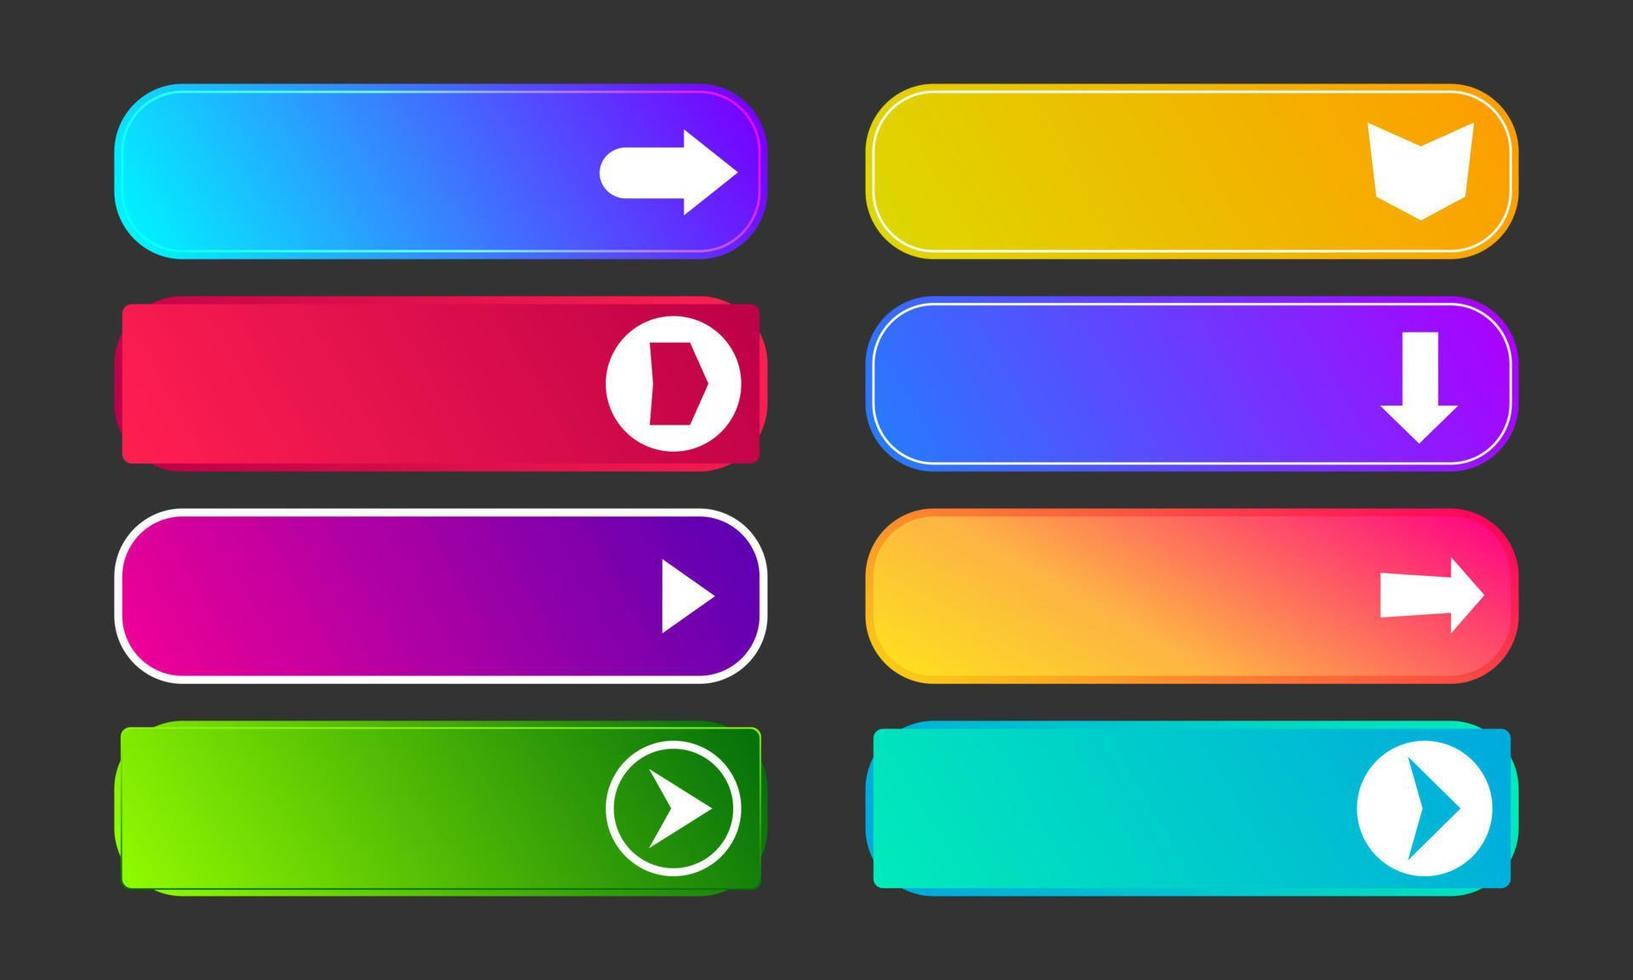 botões de gradiente coloridos com setas. conjunto de oito botões web abstratos modernos. ilustração vetorial vetor